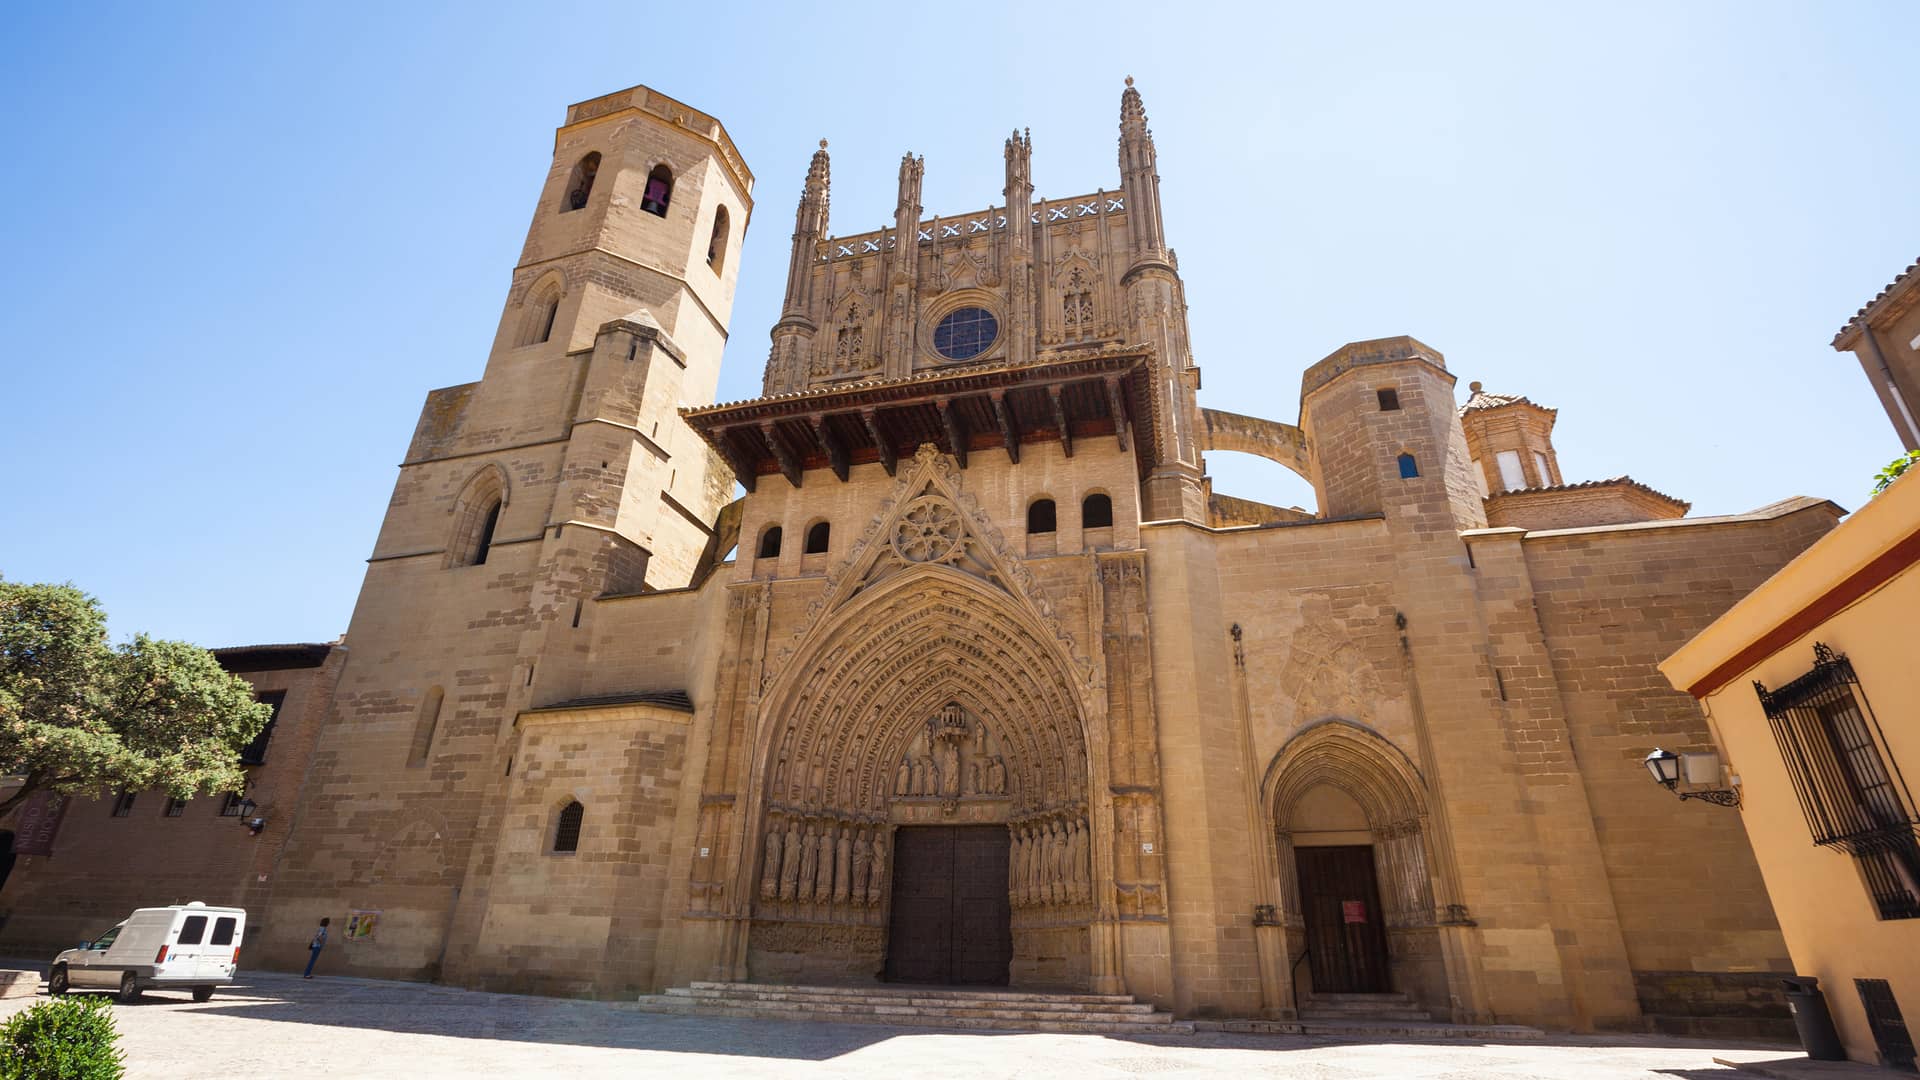 Catedral de Saint Mary Huesca donde esta disponible el operador telefónico finetwork